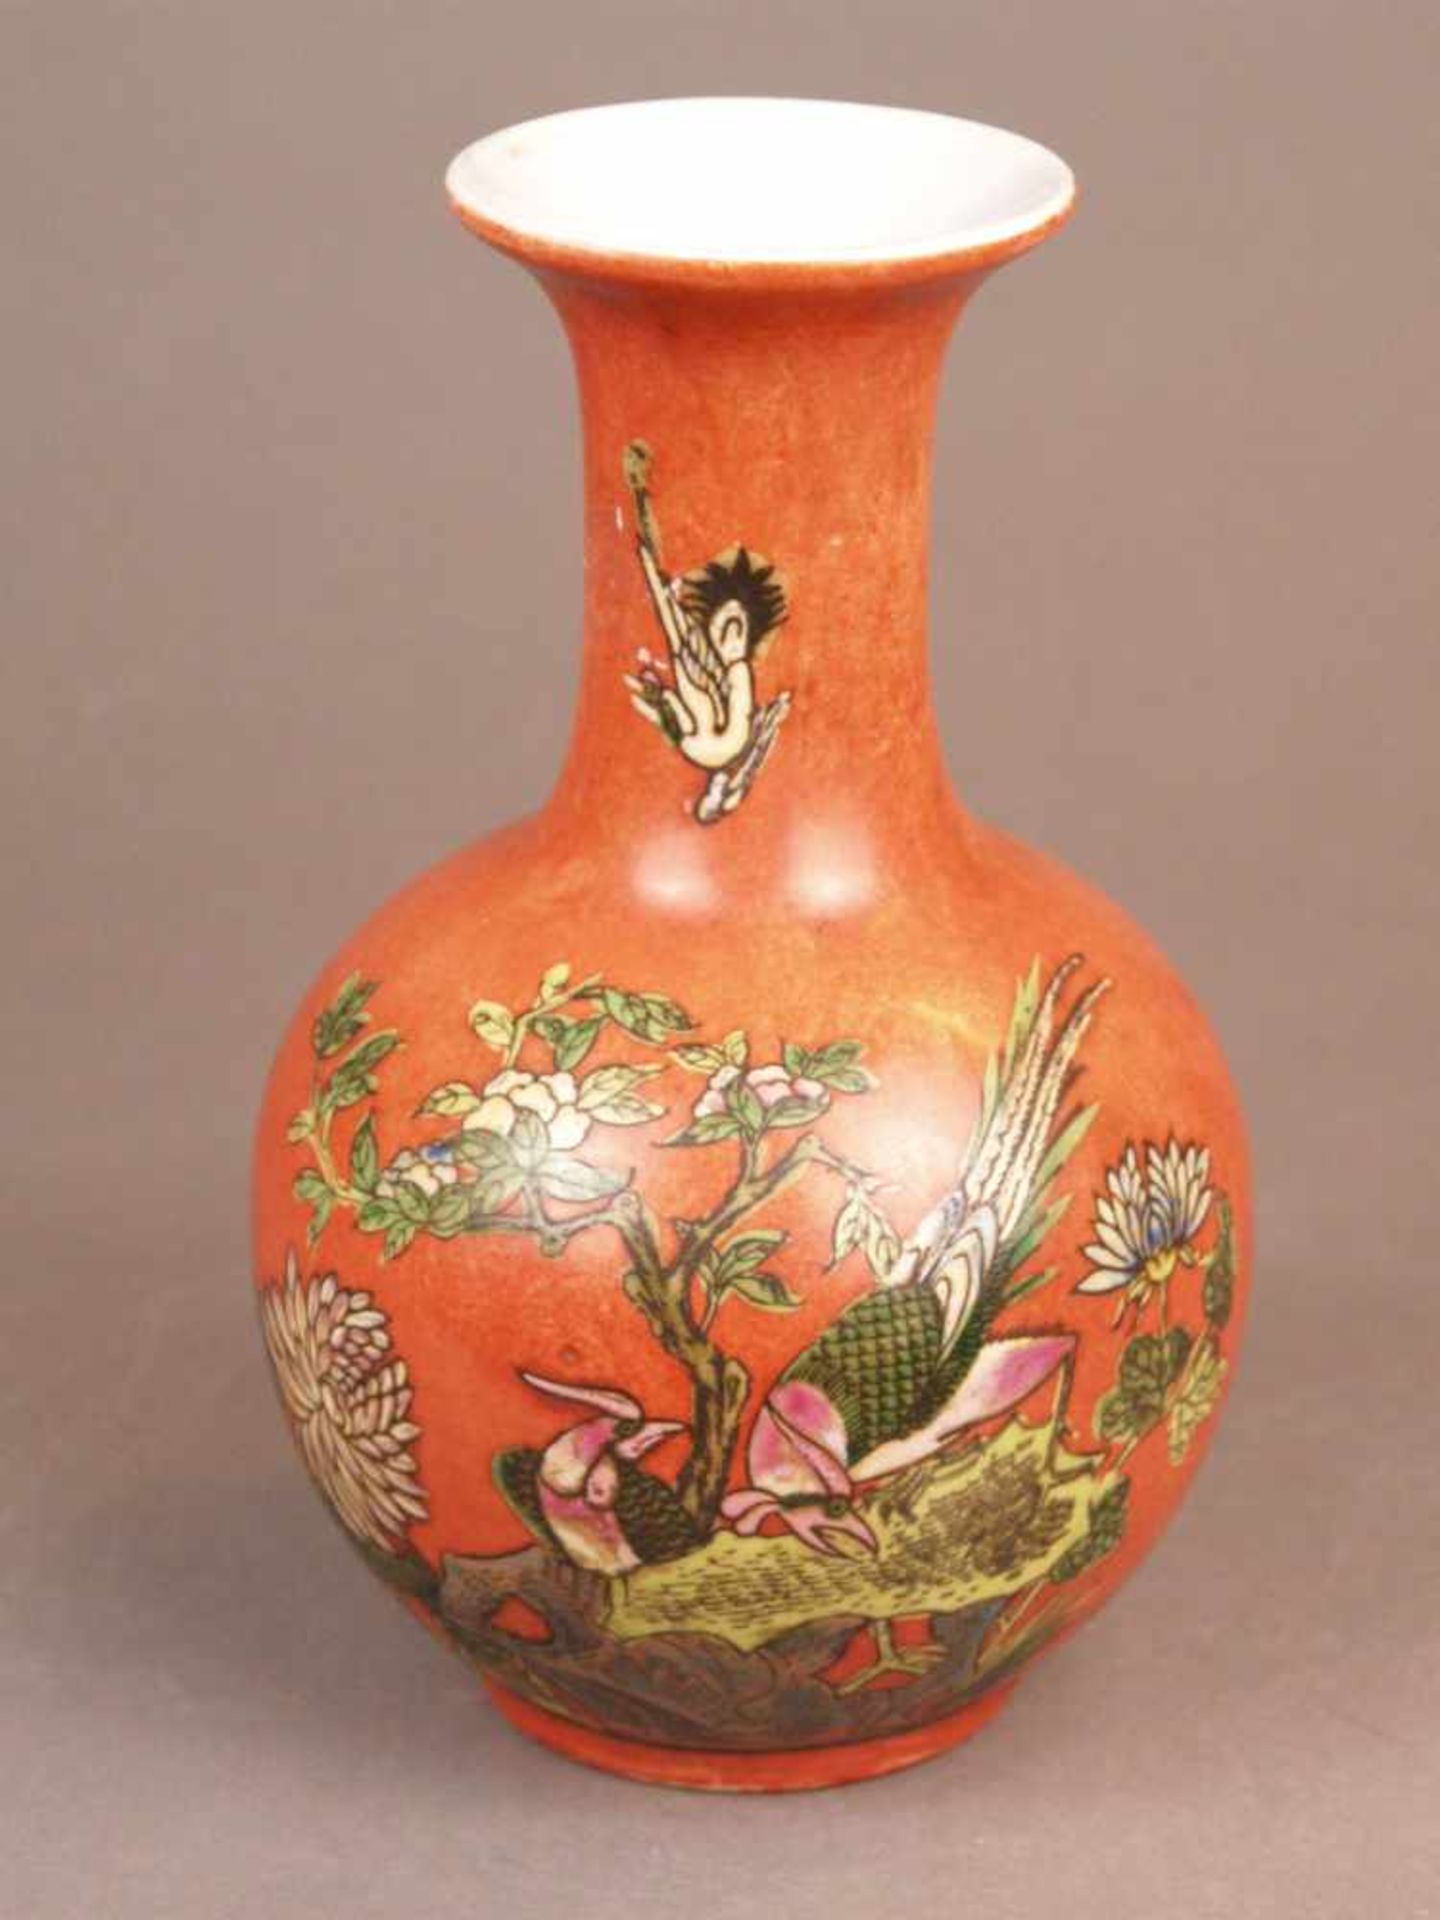 Vase - Tian qiu ping, rote Glasur in der Art der Pfirsichblütenglasuren sowie Darstellung zweier